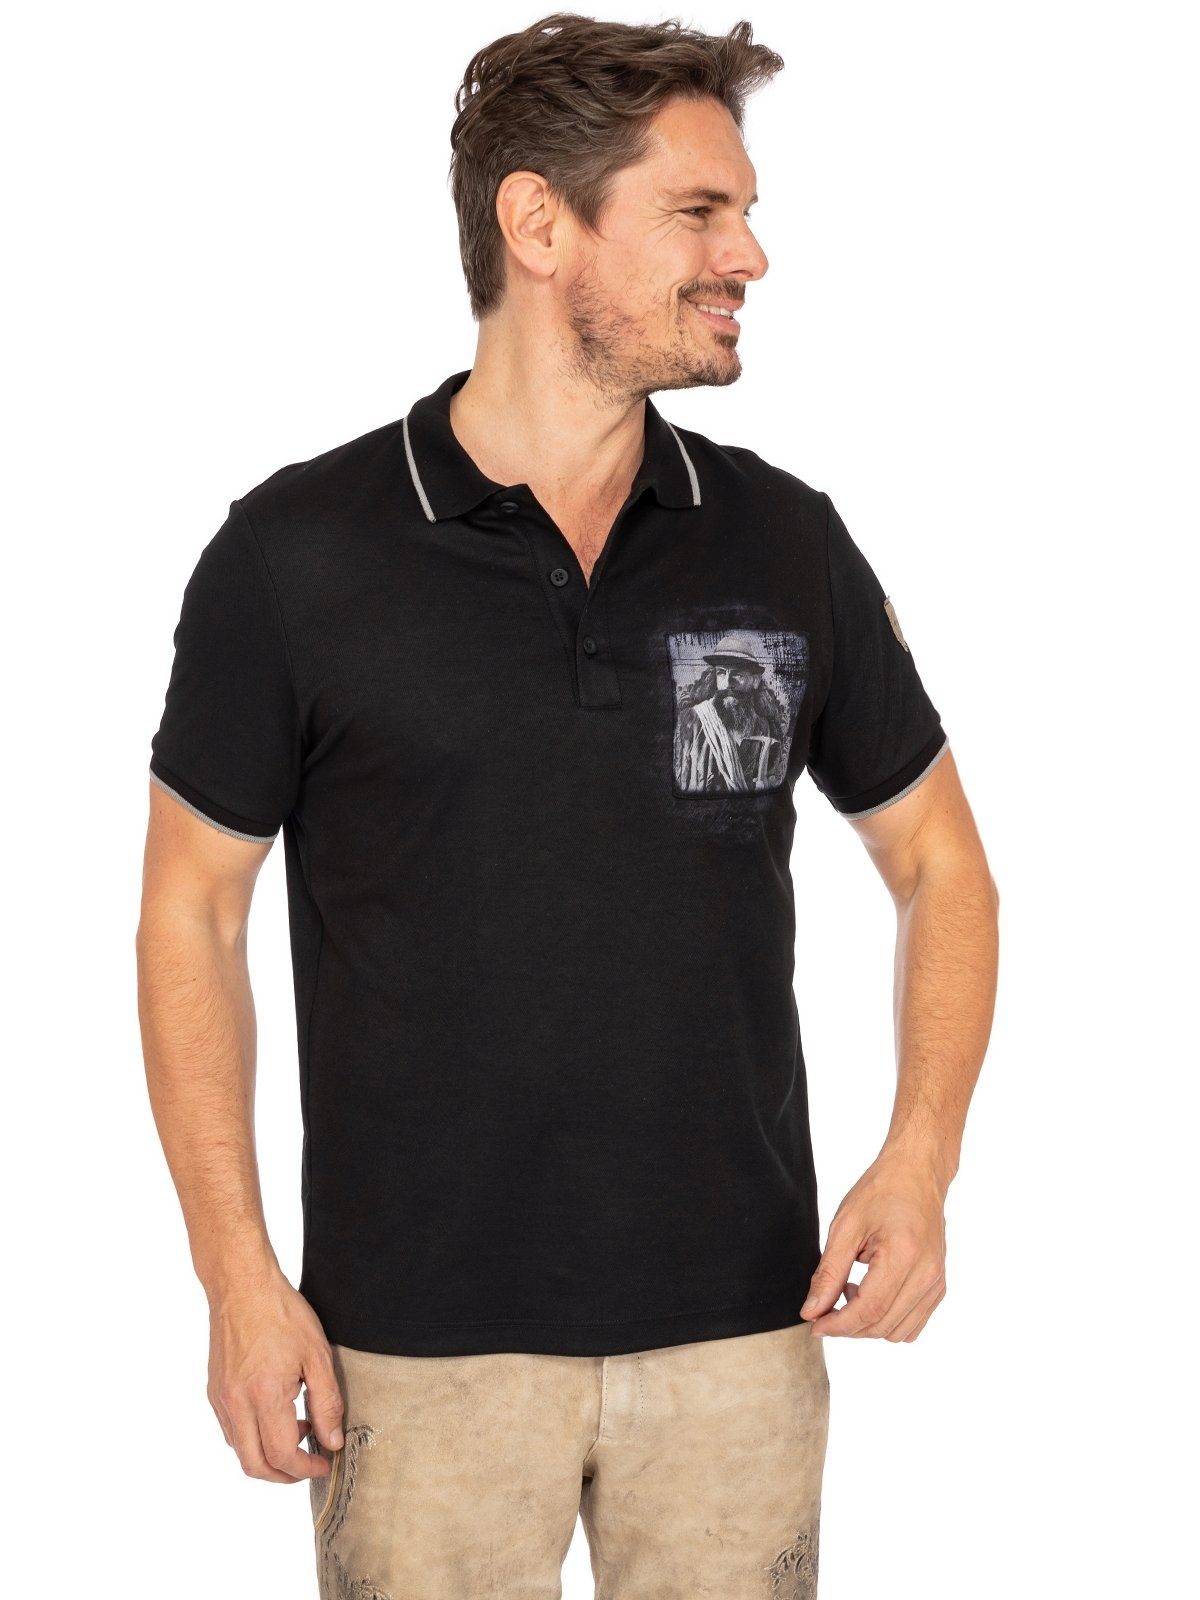 T-Shirt Almgwand schwarz PUTZENTALALM Trachtenshirt